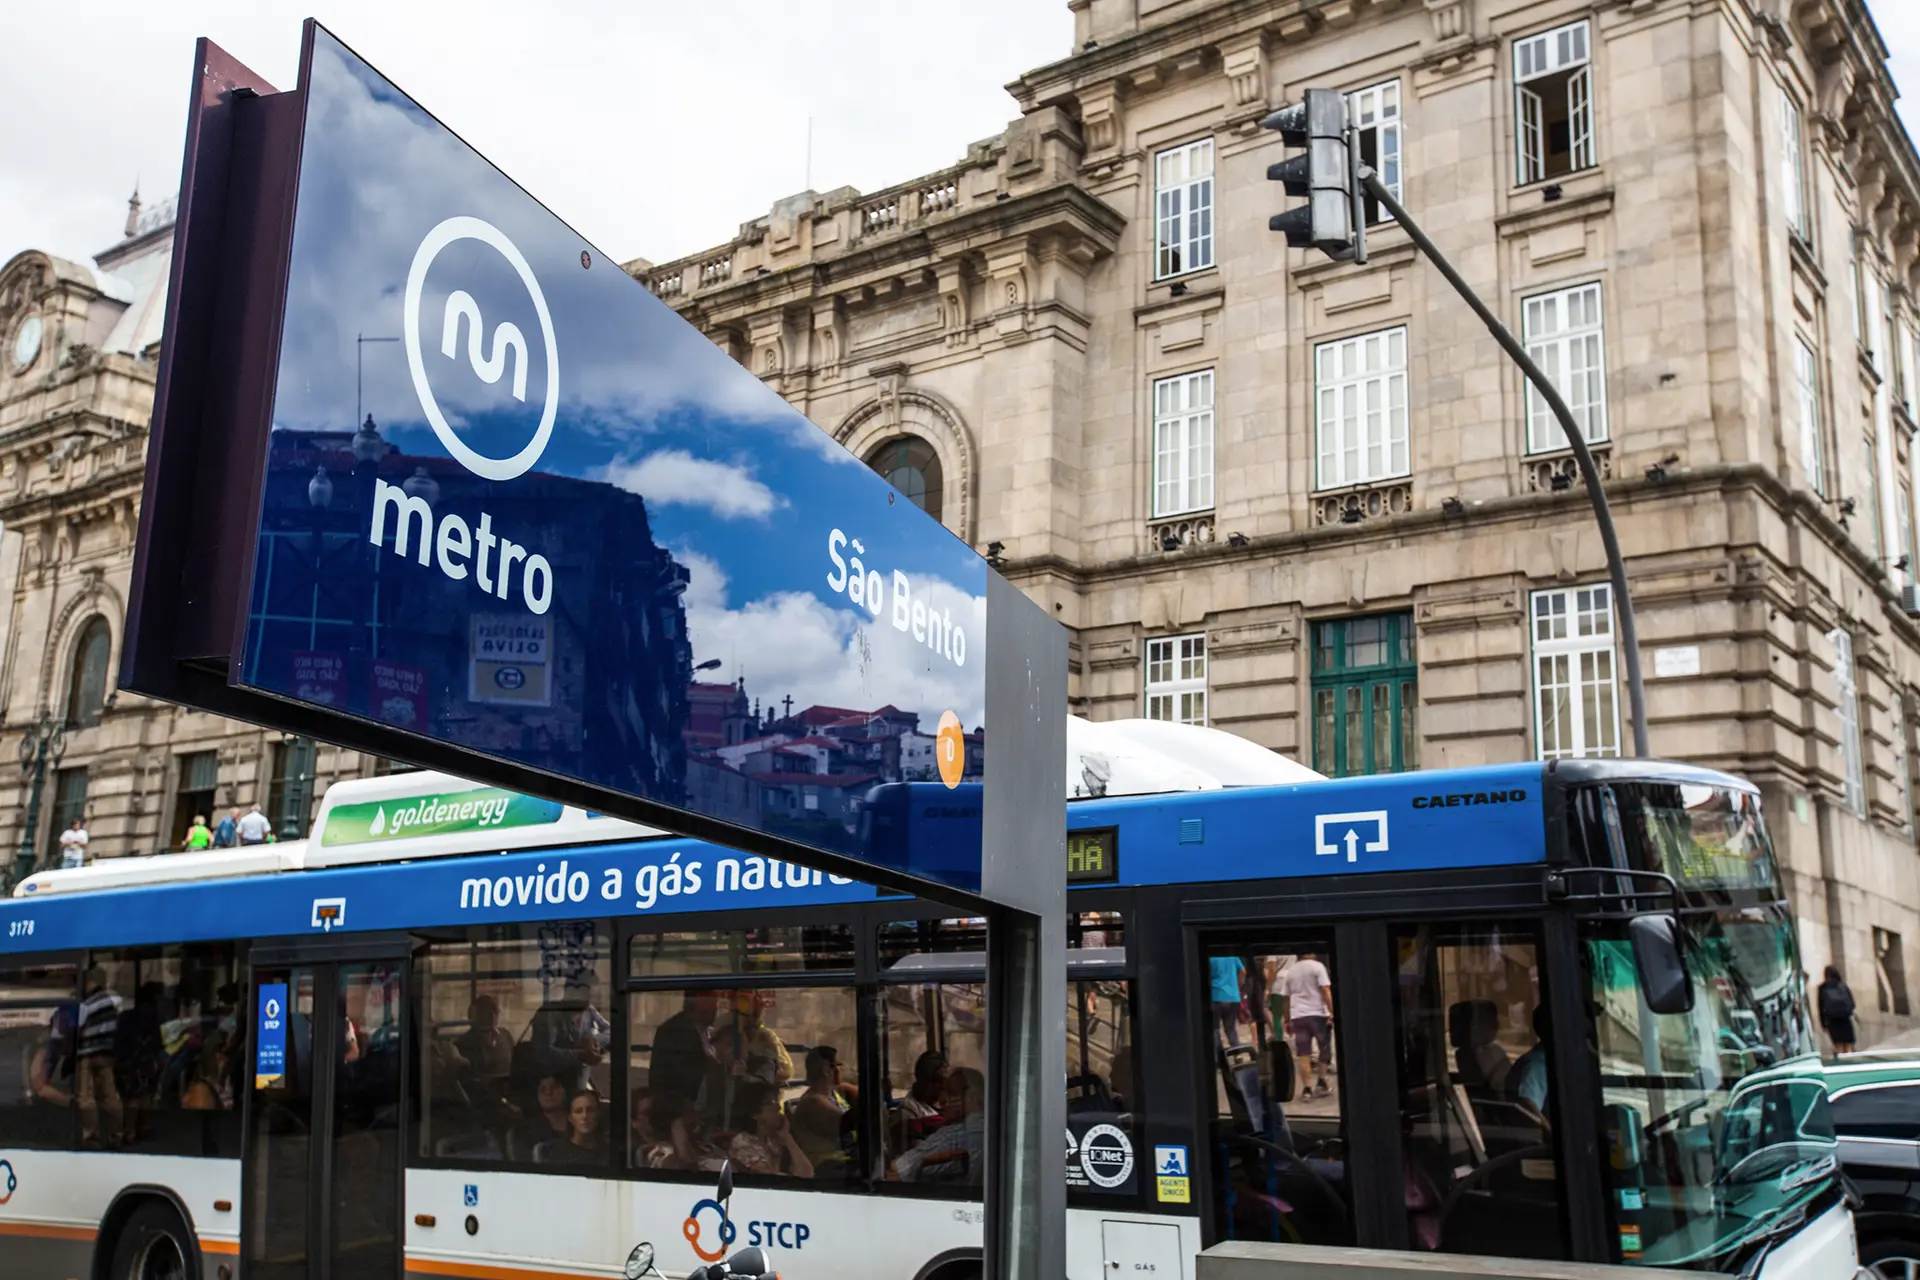 No futuro, para andar de autocarro e Metro no Porto bastará encostar o cartão bancário ao validador